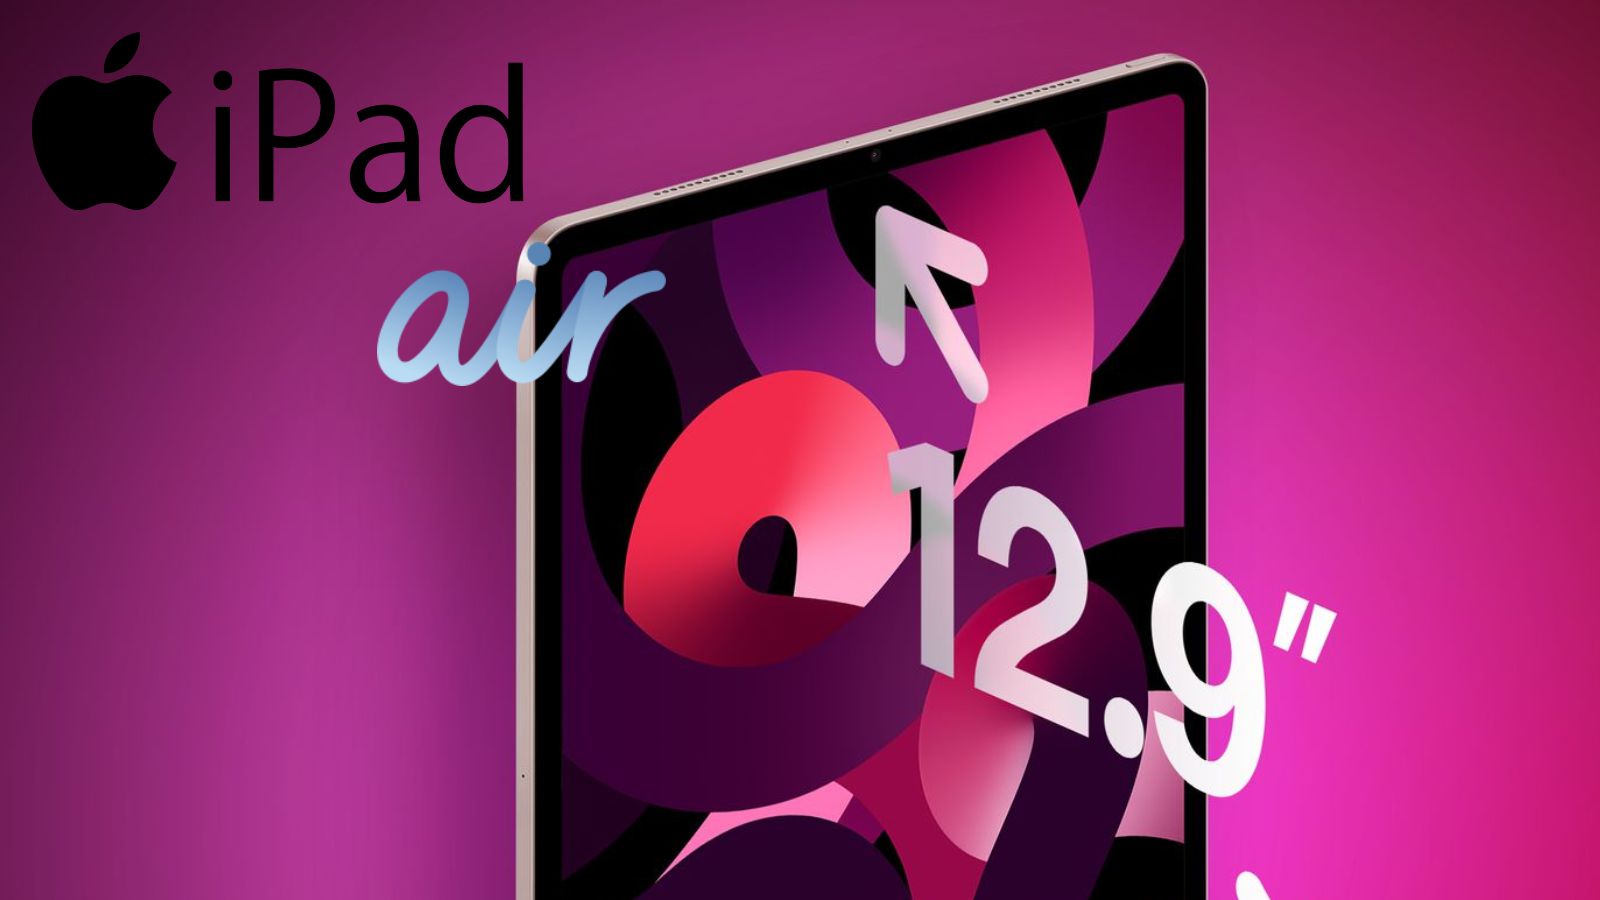 Dei rumor parlano di un iPad Air con un display da 12,9